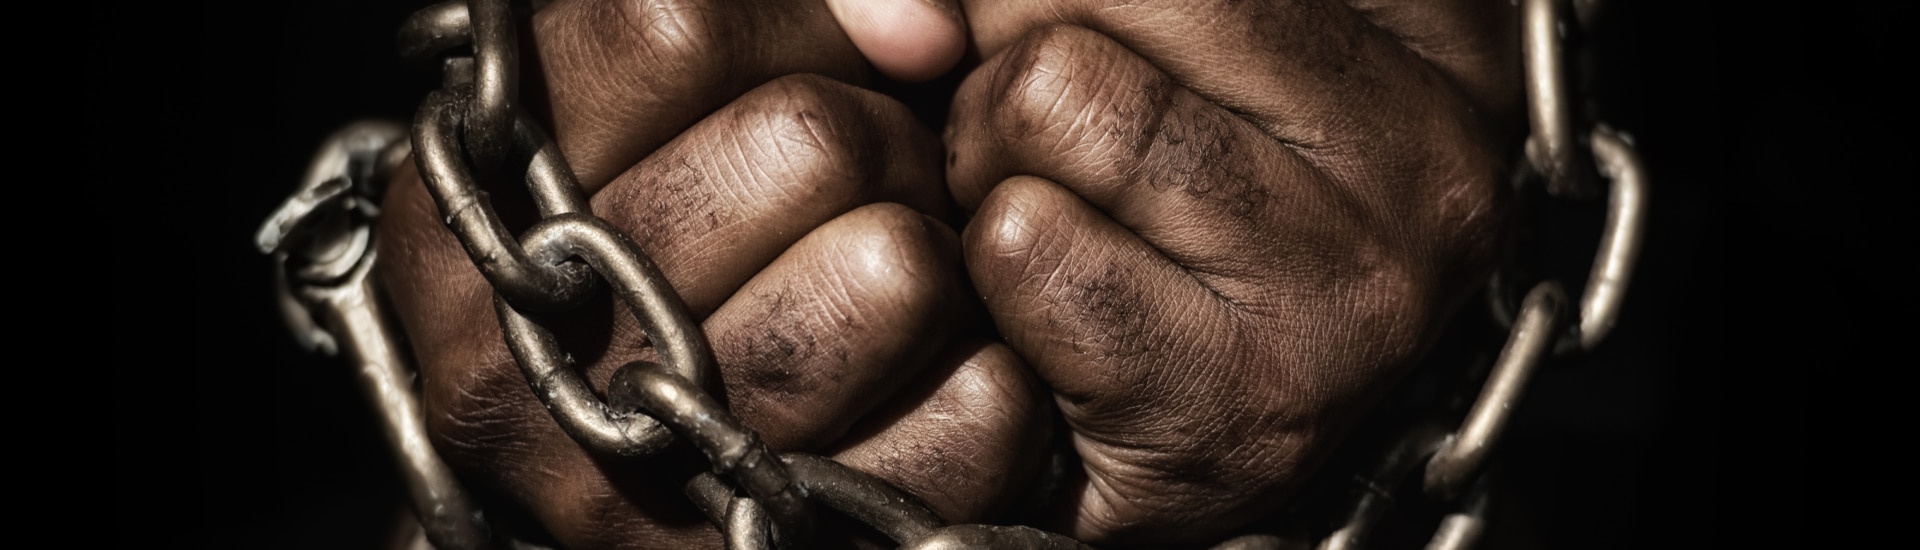 La abolición de la esclavitud decretada por la decimotercera enmienda a la Constitución